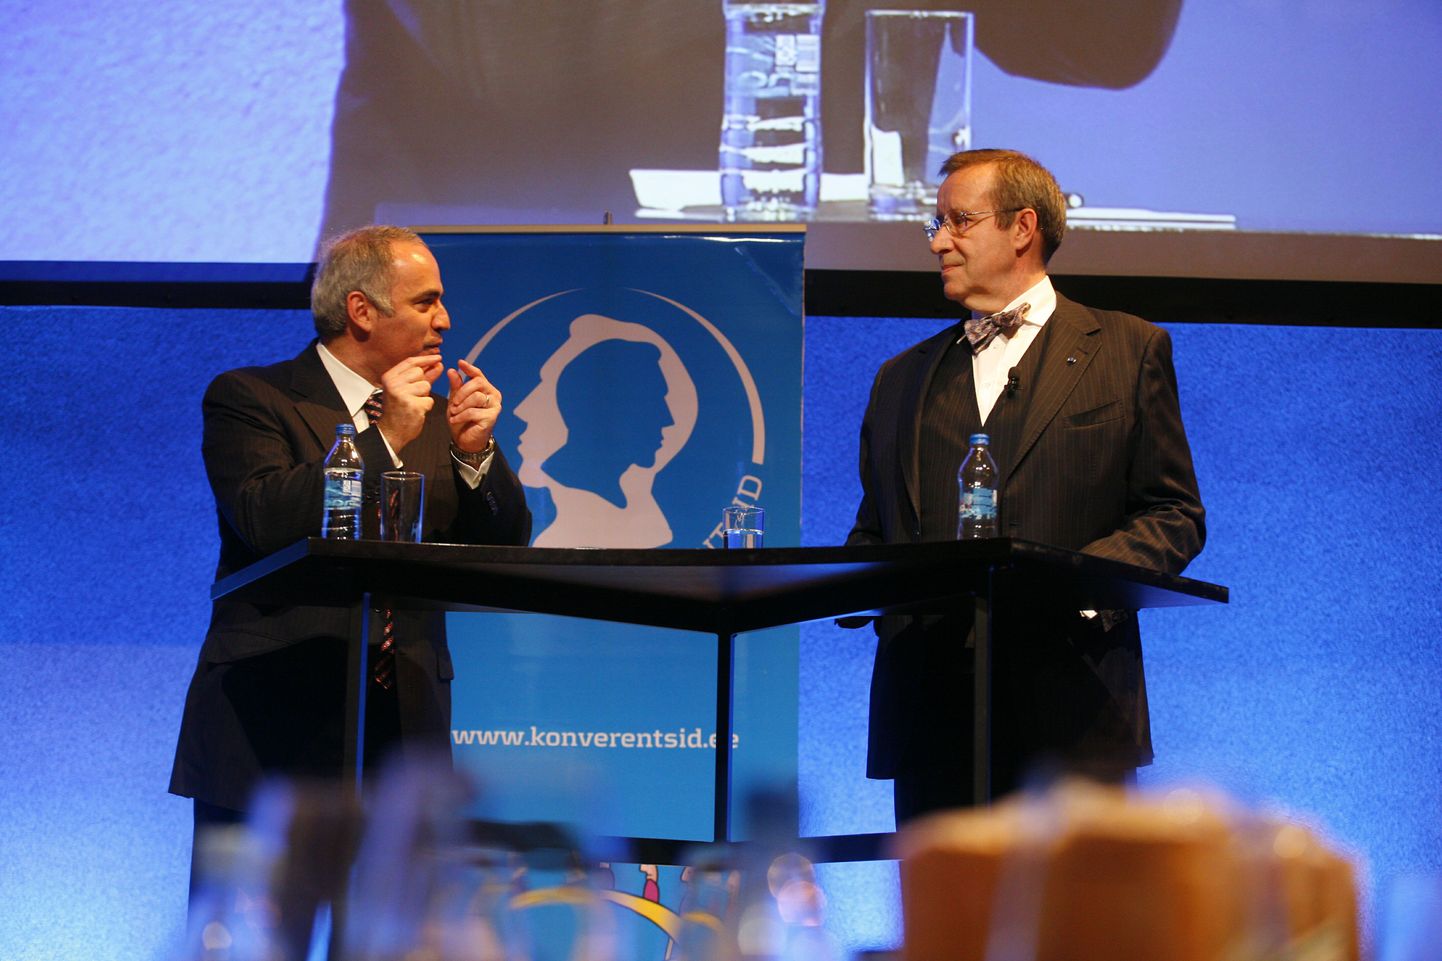 Pärnus toimunud finantskonverentsil arutlesid innovatsiooni teemadel malelegend Garri Kasparov ning president Toomas Hendrik Ilves.